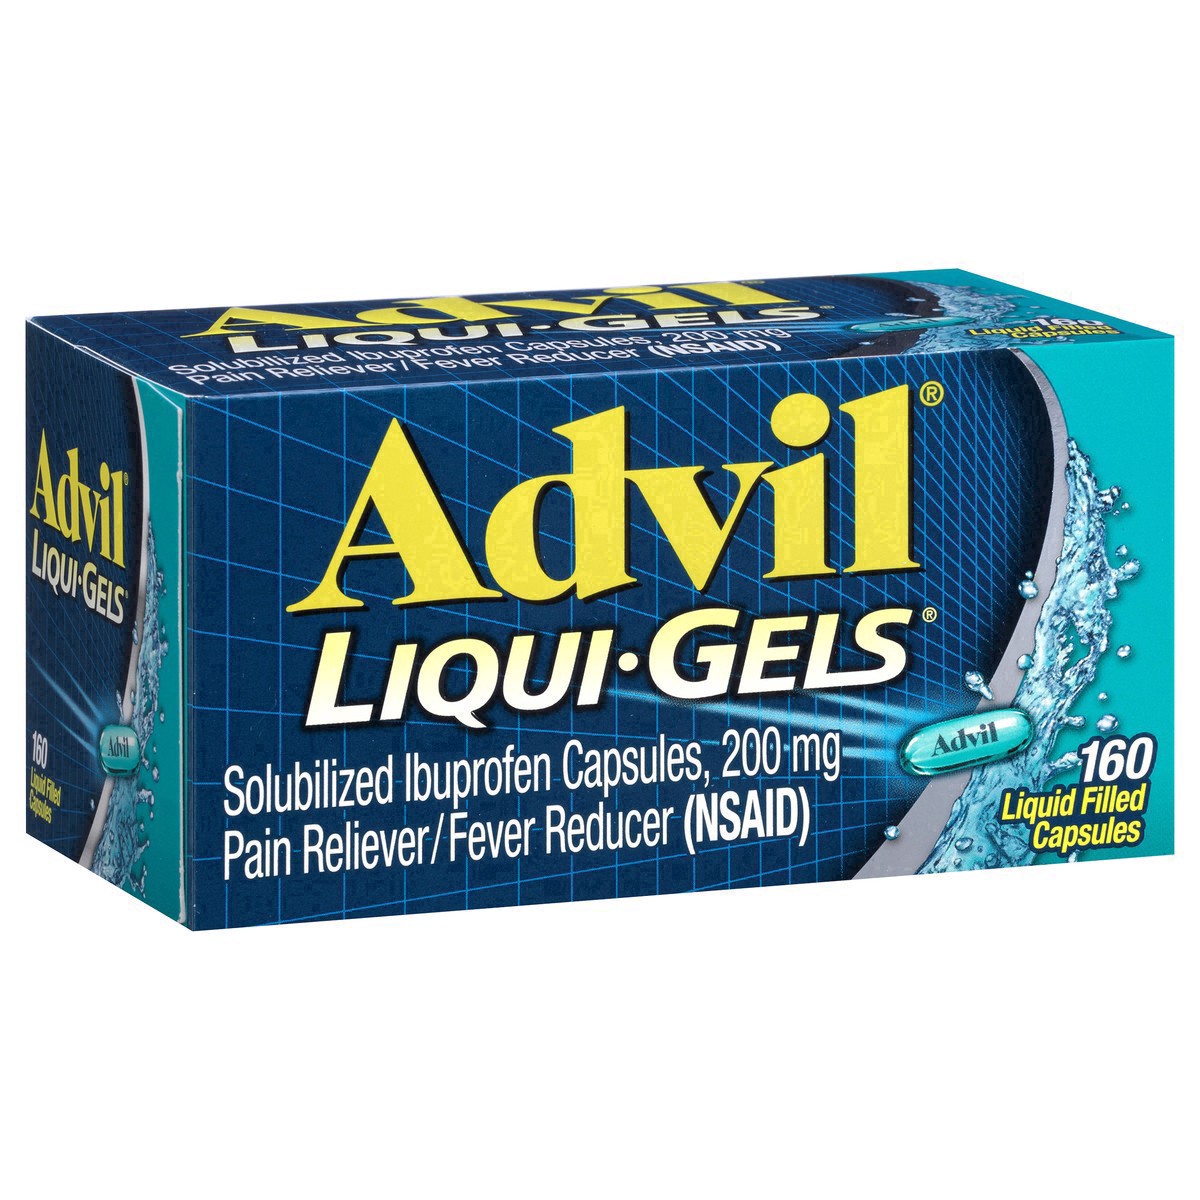 slide 12 of 18, Advil Pain Reliever/Fever Reducer Liqui-Gels Capsules - Ibuprofen (NSAID), 160 ct